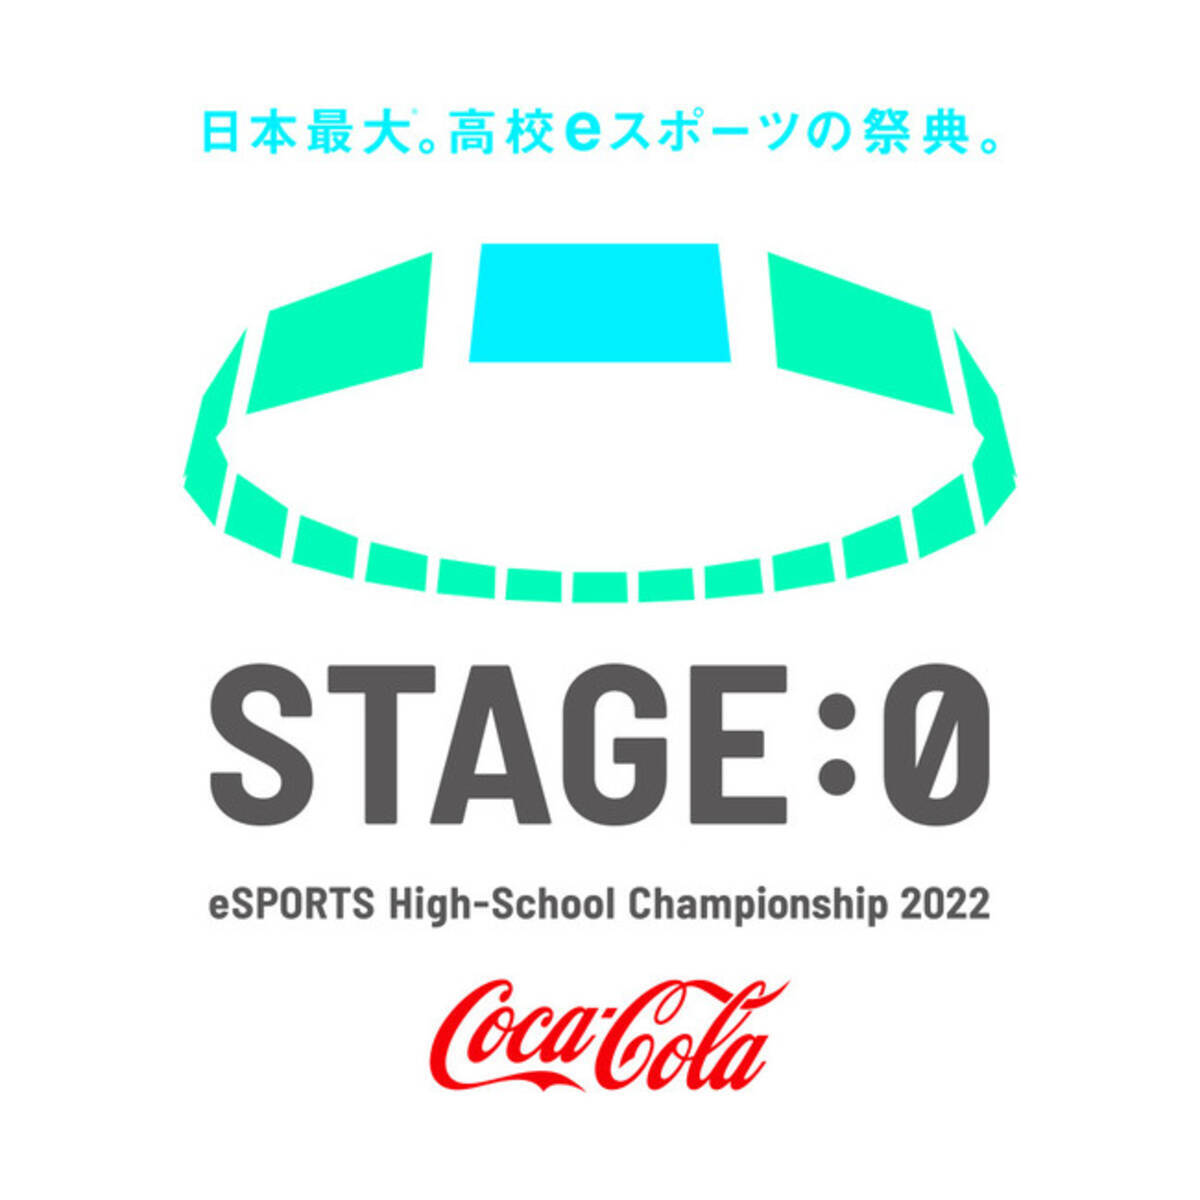 日本最大 の高校eスポーツの祭典 Stage 0 22 Tiktokフォロワー数130万人を超え 総再生回数10億回以上 高校生に大人気 土佐兄弟が大会スペシャルサポーターに参加決定 22年6月16日 エキサイトニュース